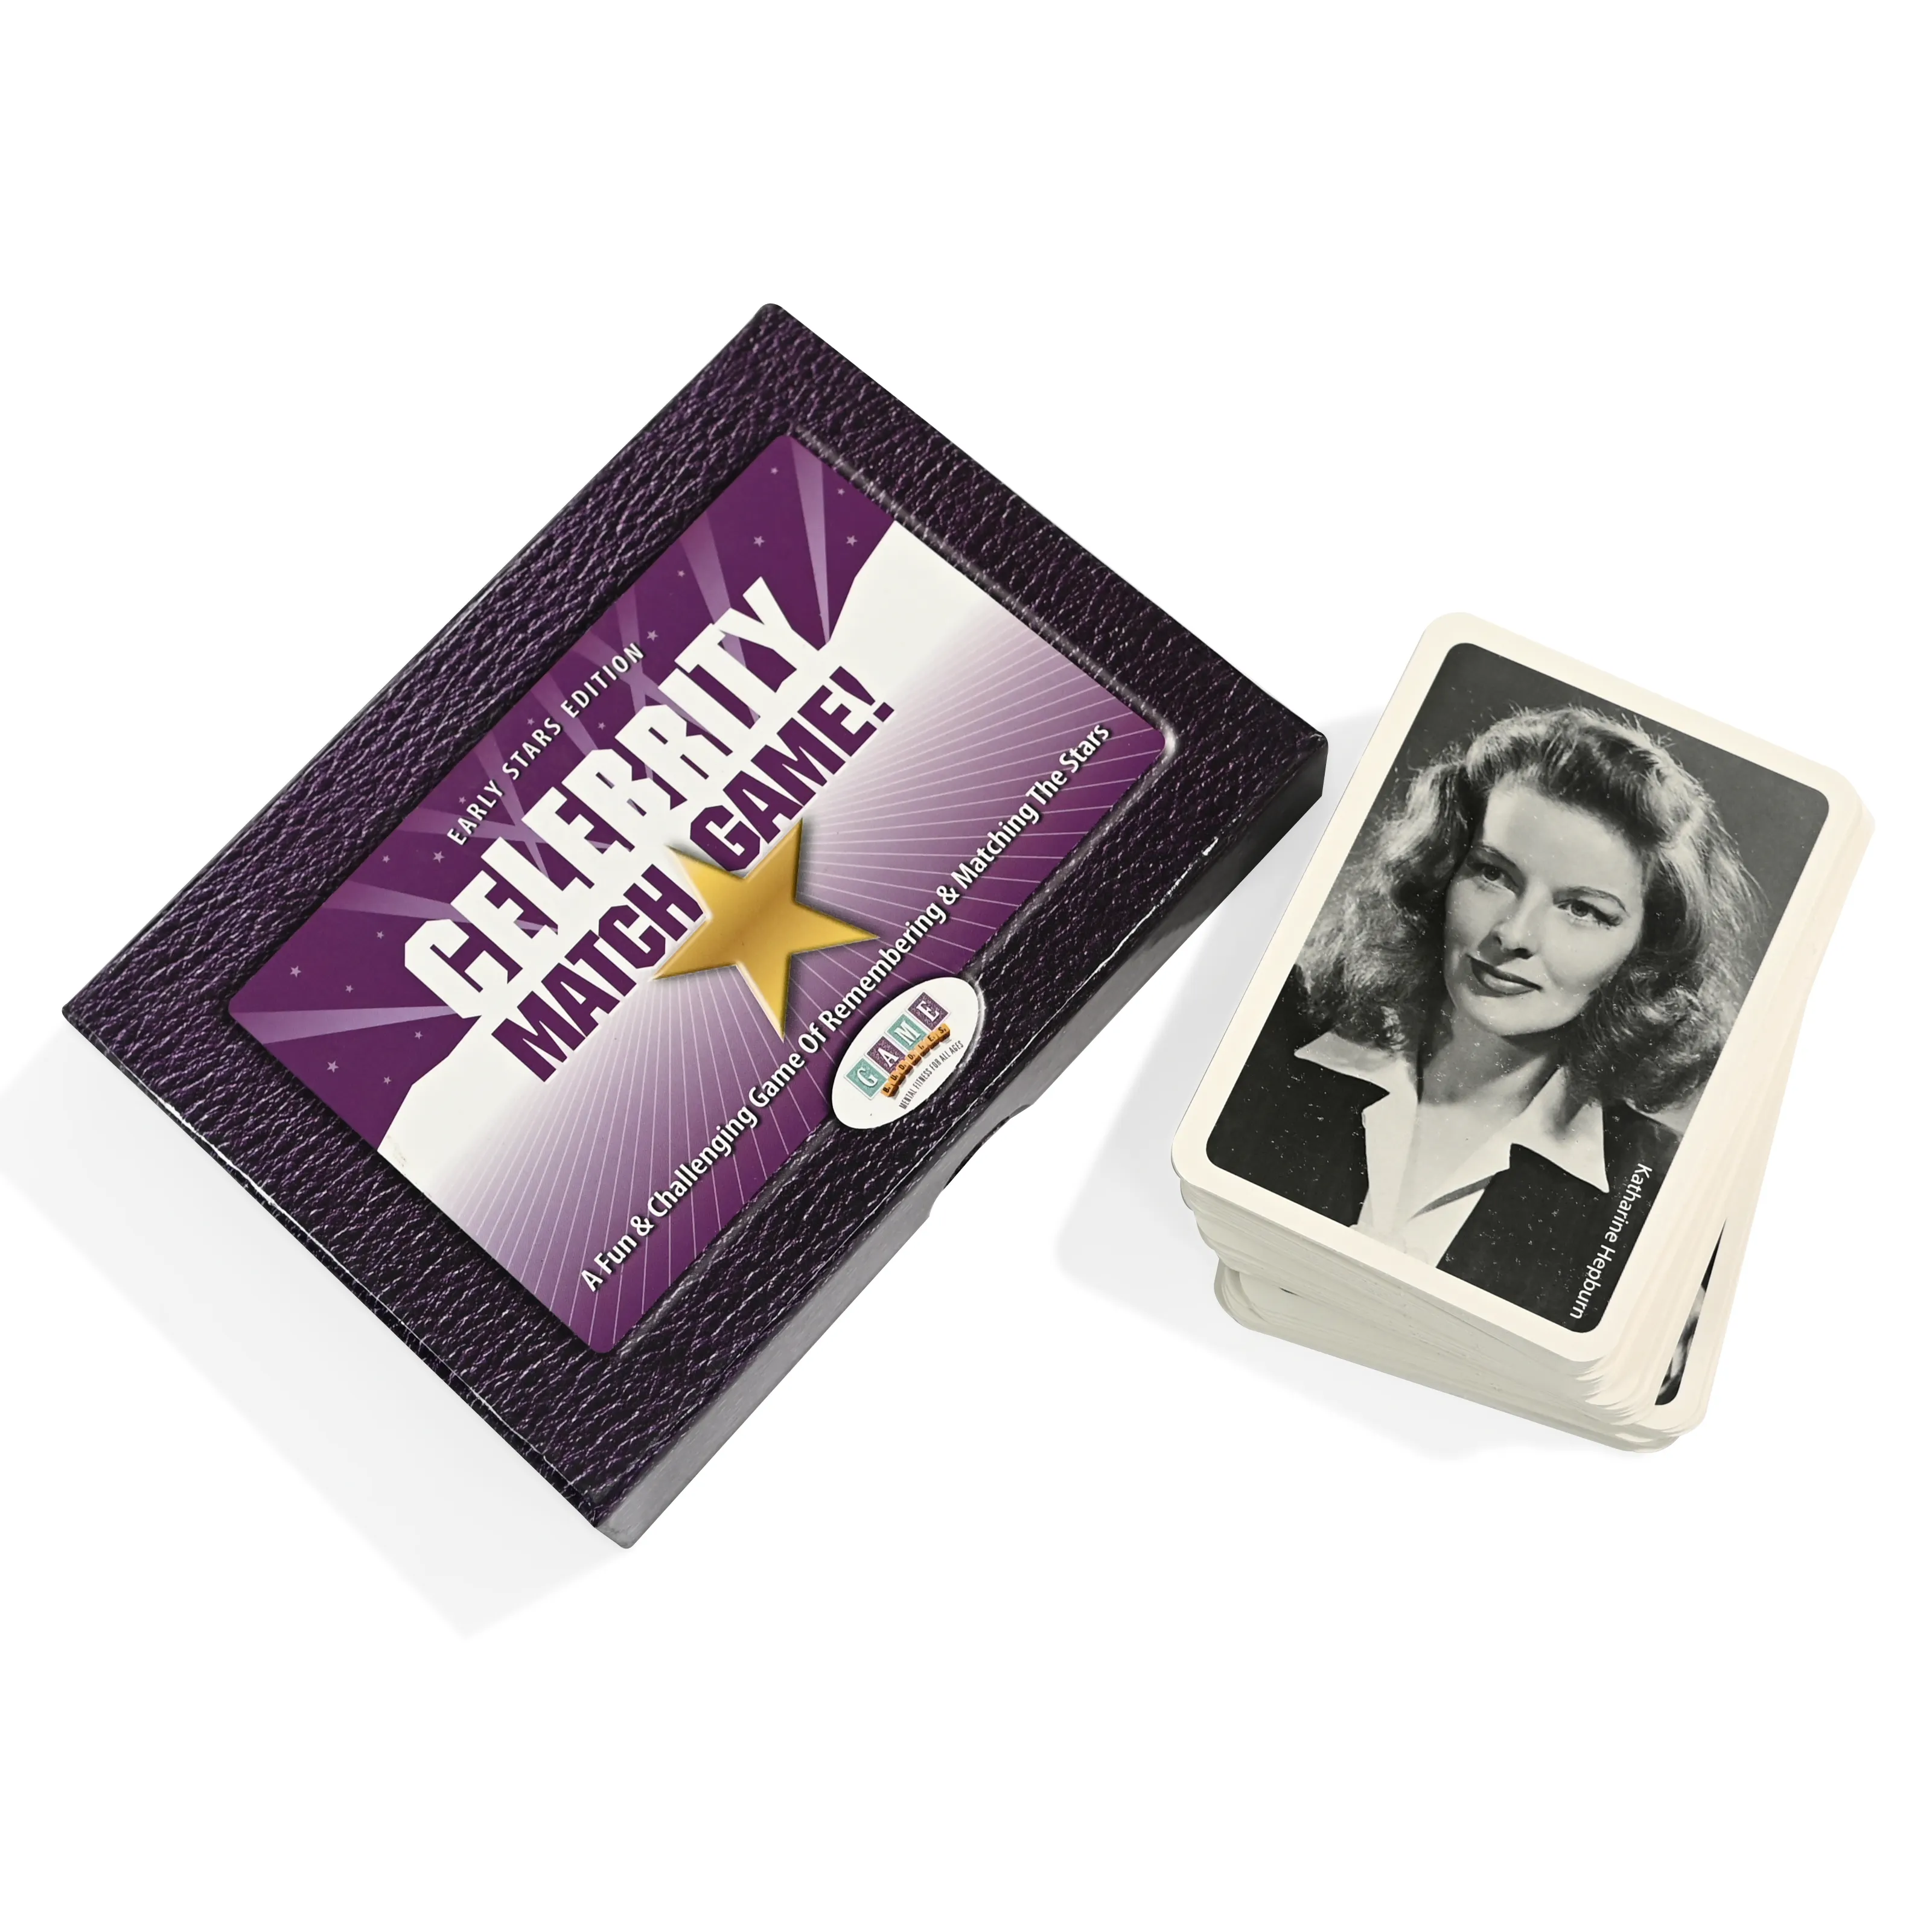 वयस्क गेम के लिए होलोग्राफिक कस्टम प्रिंटिंग पार्टी गेम प्रॉप्स सेलिब्रिटी मेमोरी फ्लैश कार्ड का निर्माण करें